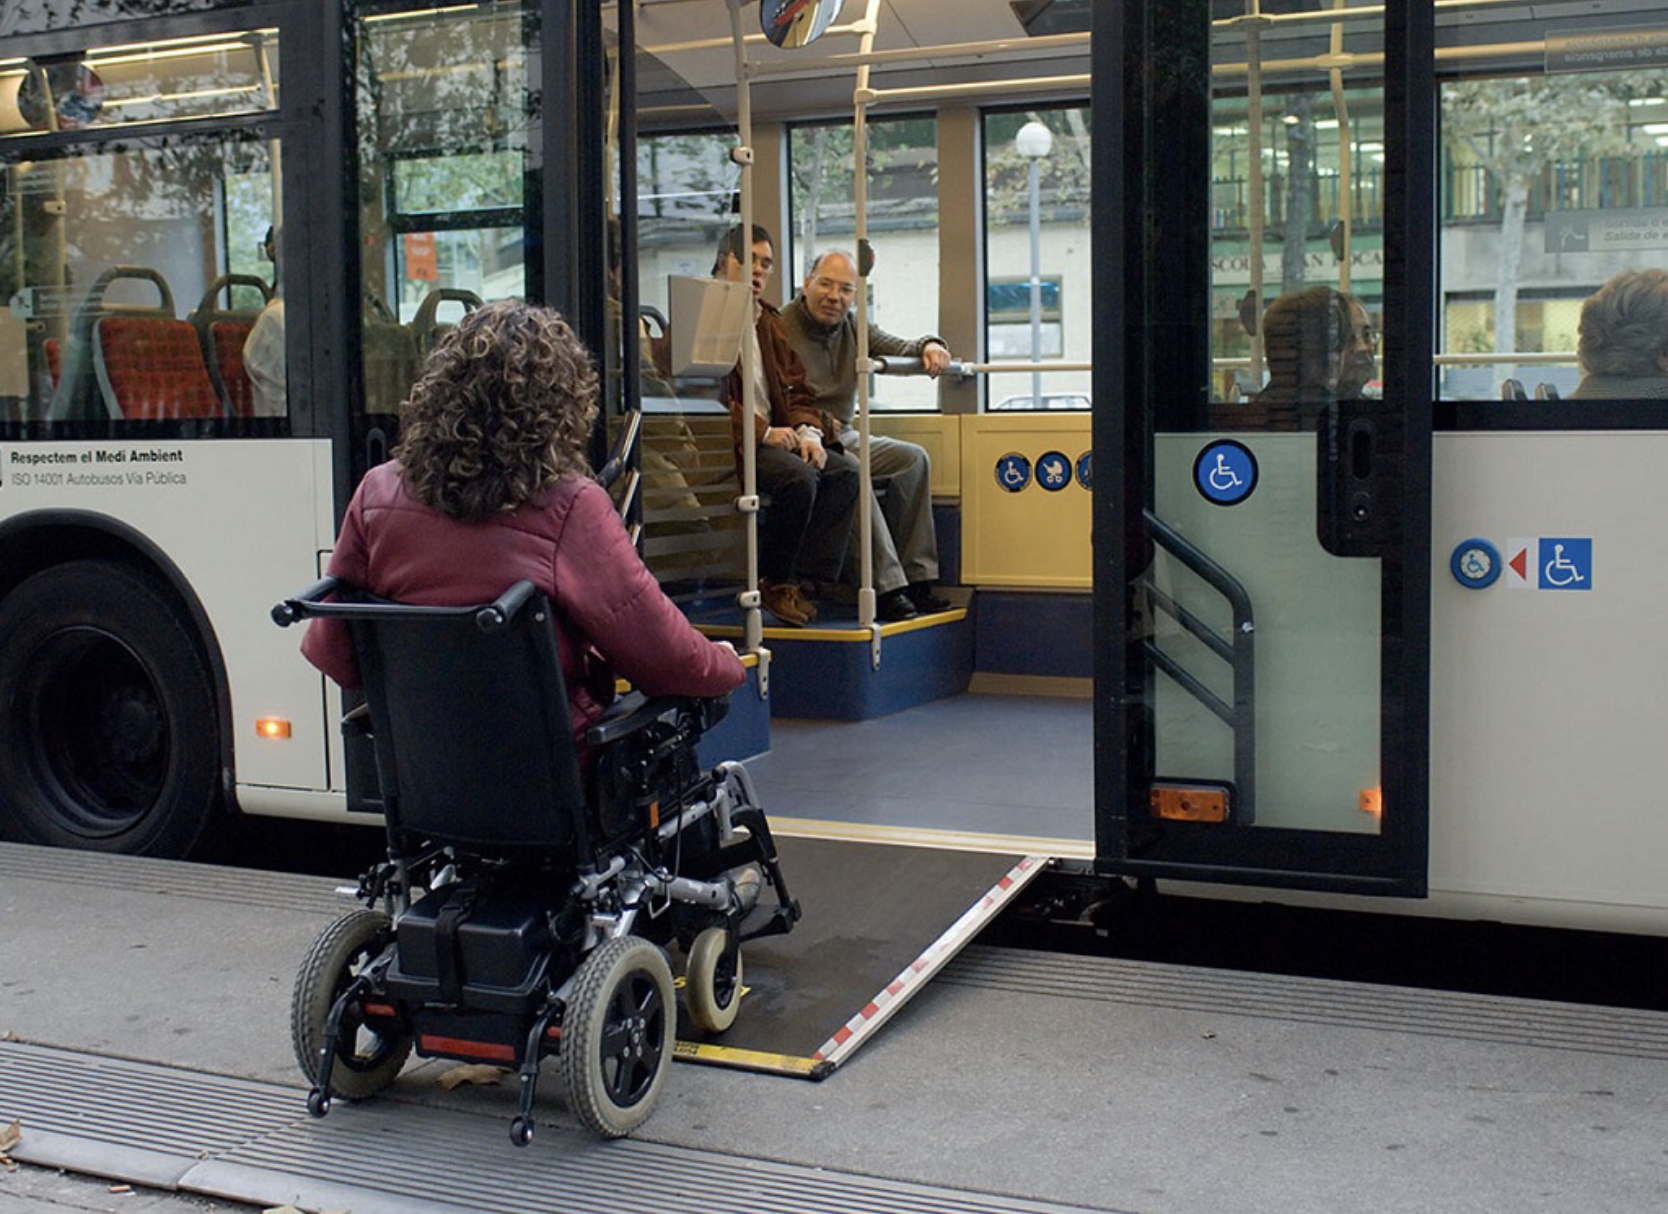 Транспортная доступность для инвалидов. Общественный транспорт для инвалидов. Автобус для инвалидов. Транспорт для маломобильных людей. Транспорт для людей с ограниченными возможностями.